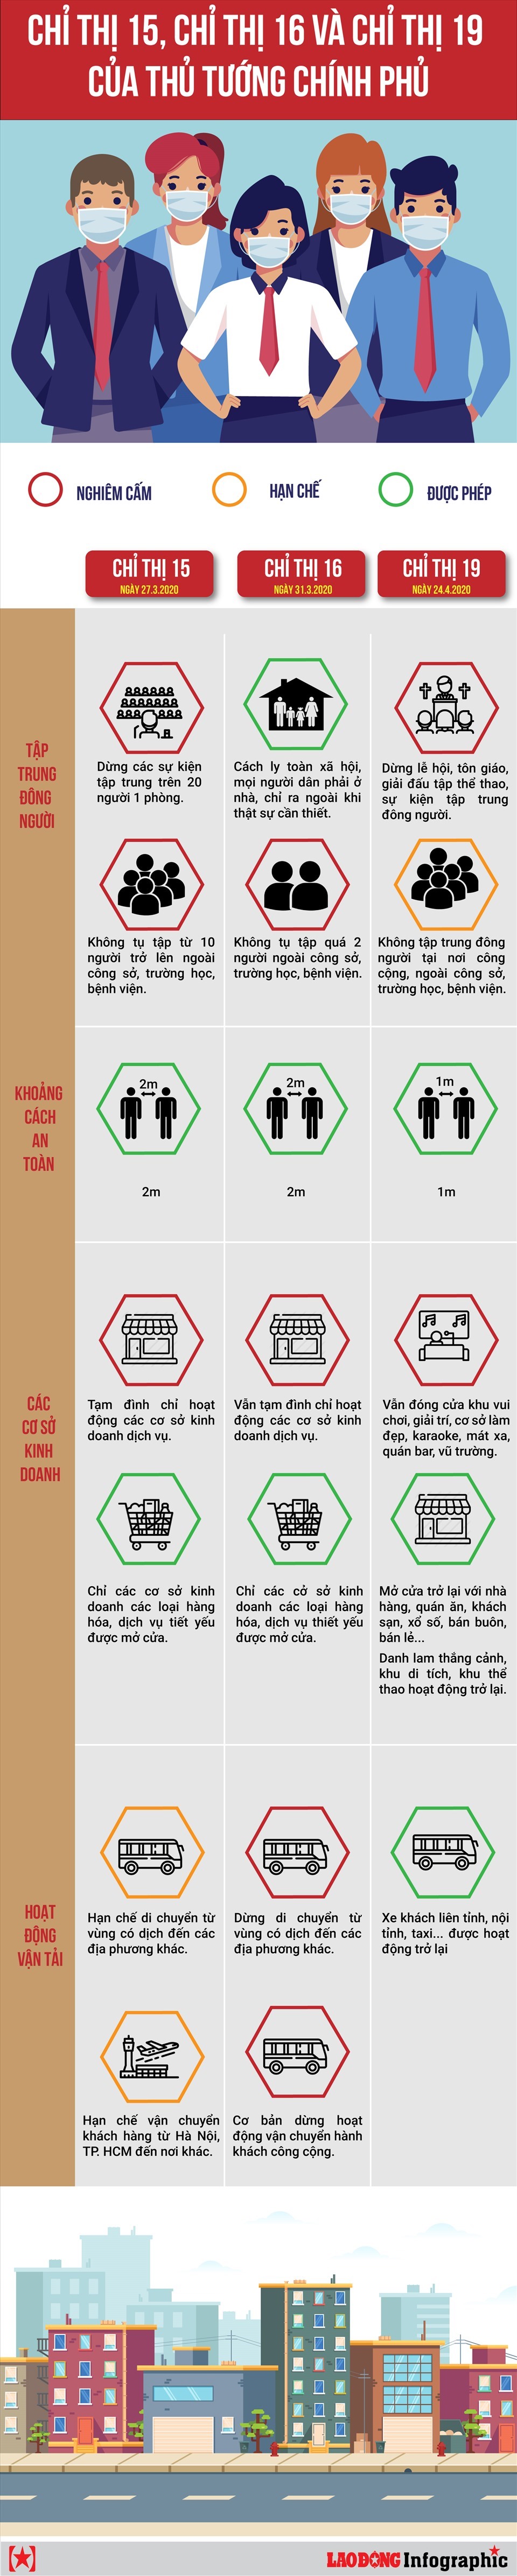 Infographic: Đức Thiện - Văn Thắng